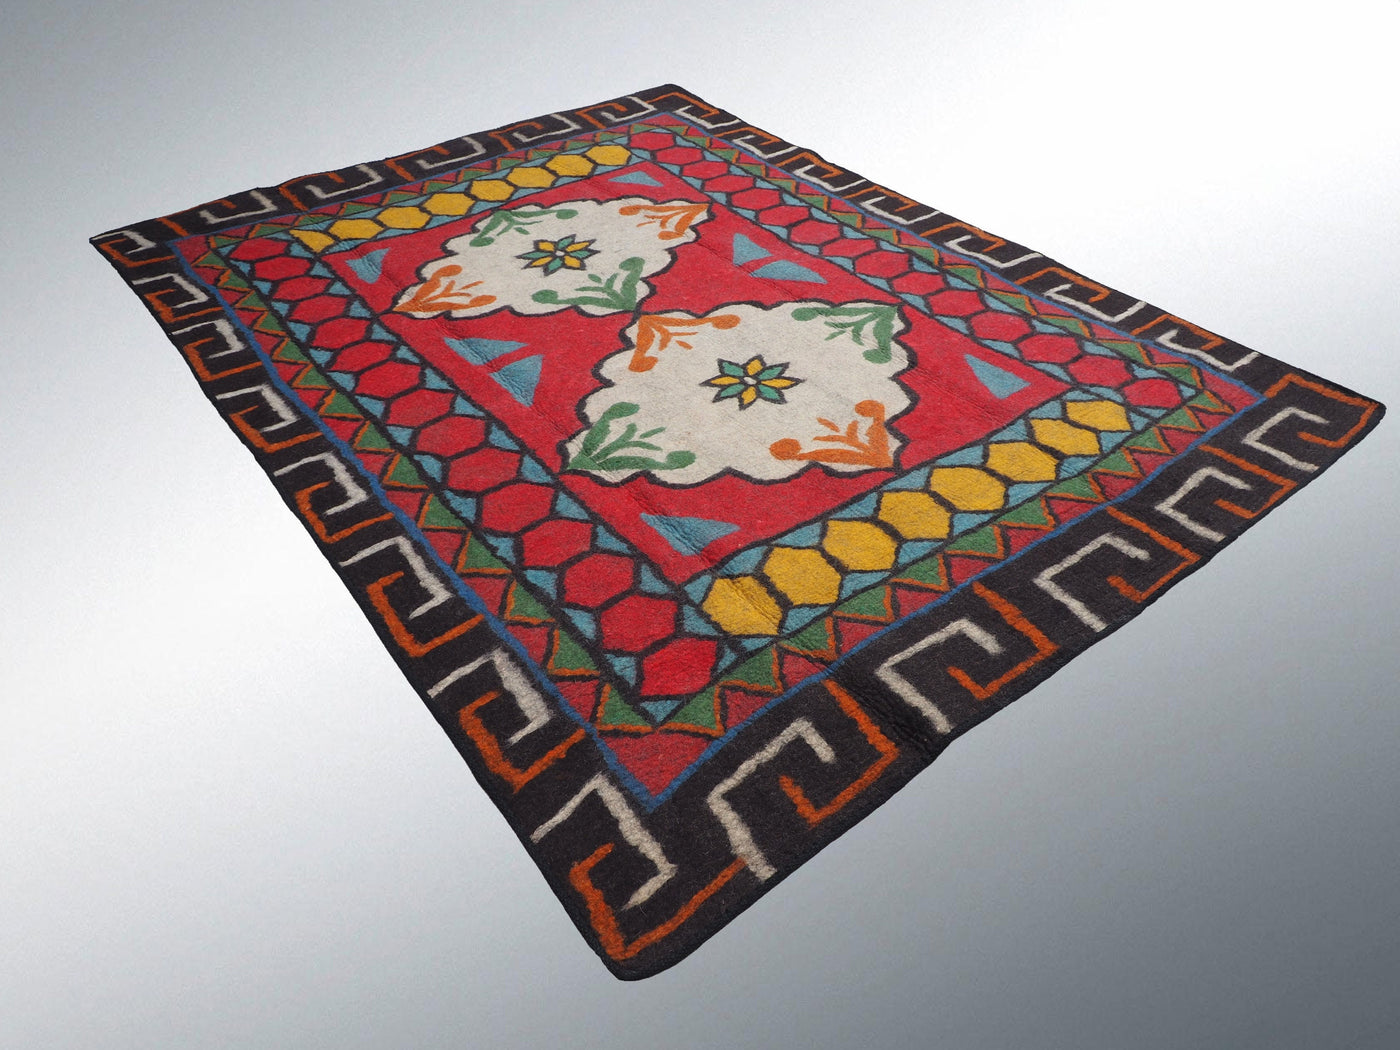 293x214 cm orient handgewebte Teppich Nomaden handgearbeitete Turkmenische nomanden Jurten Filzteppich Filz koshma Afghanistan shyrdak N702  Orientsbazar   